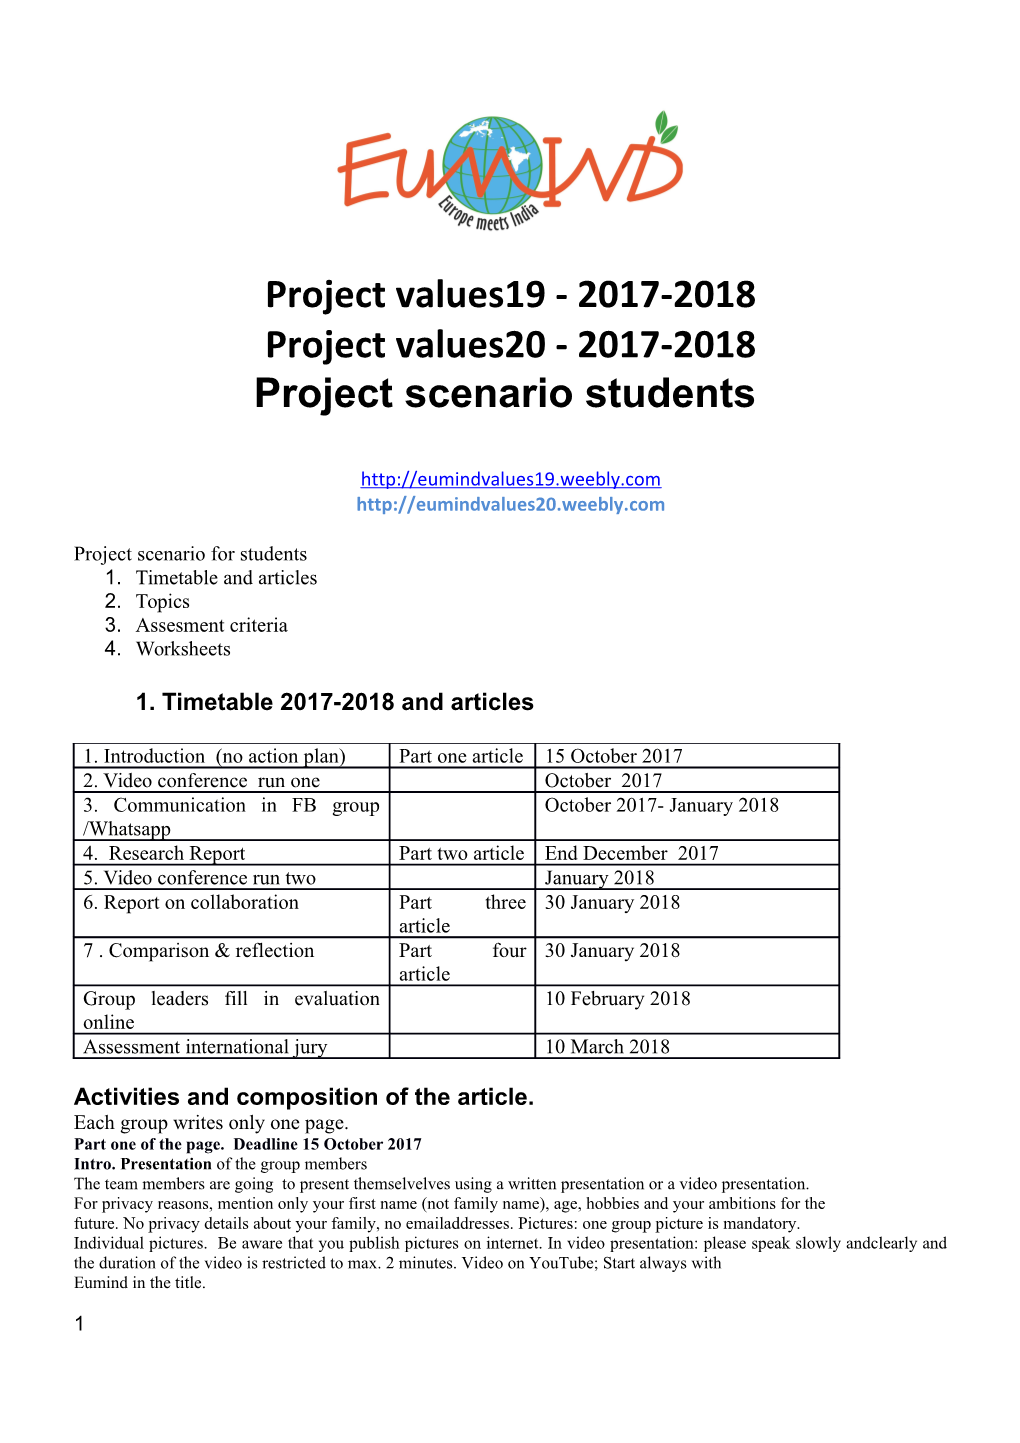 Project Scenario Students